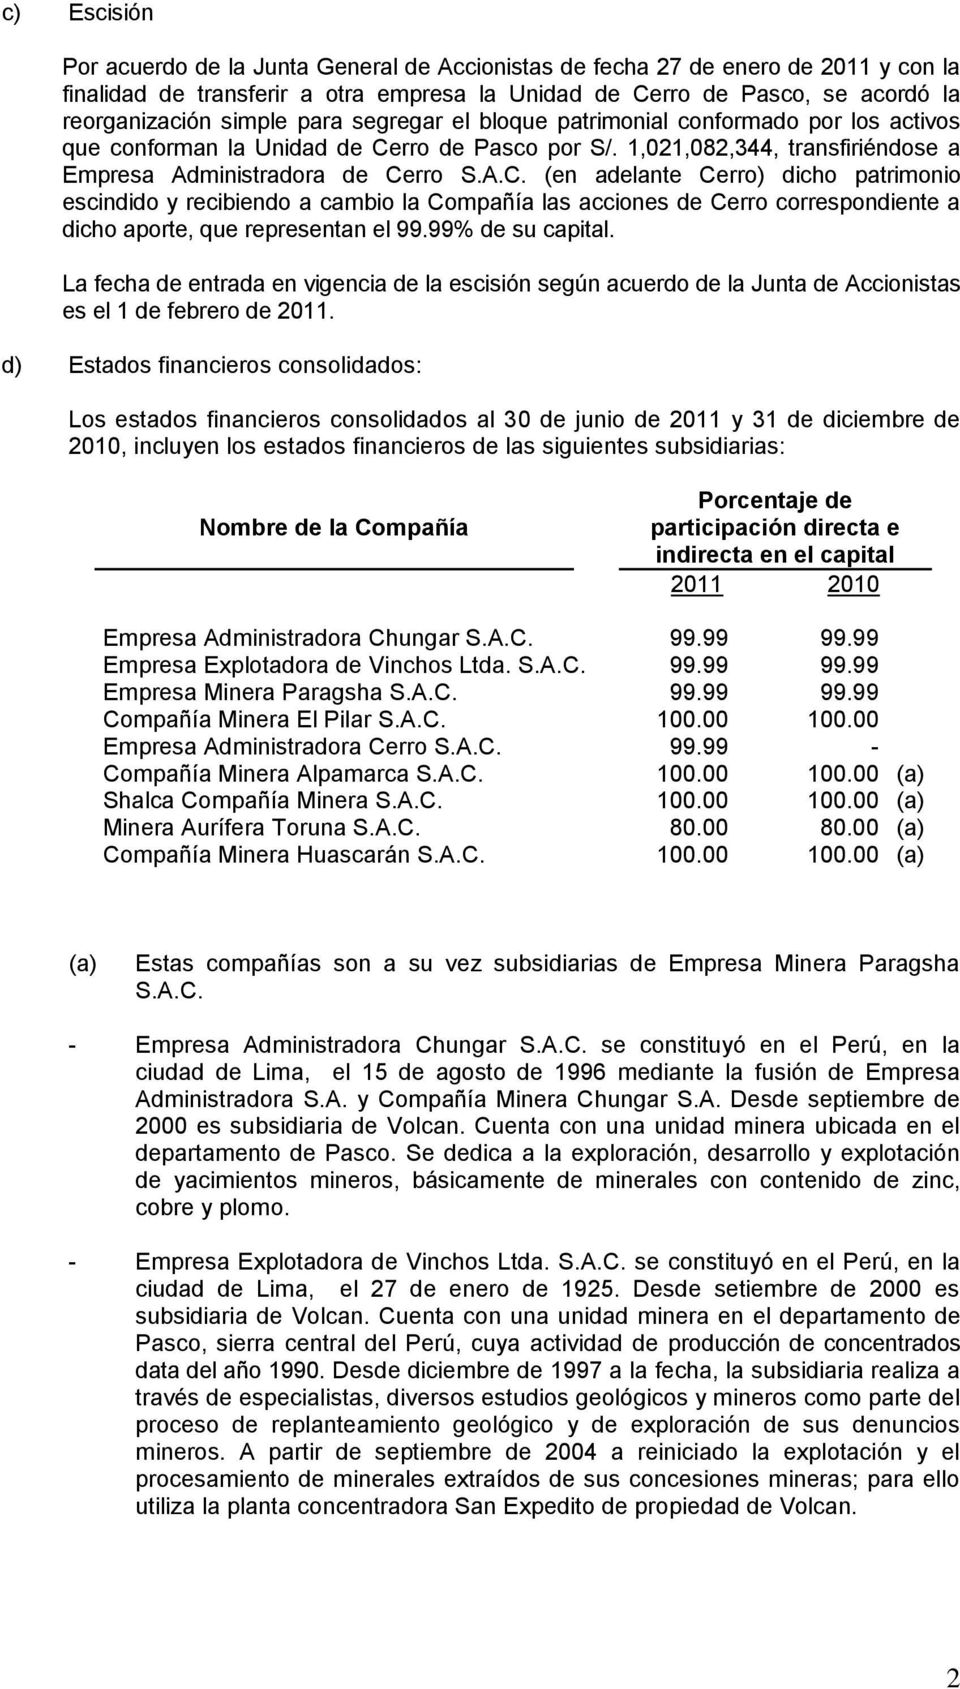 rro de Pasco por S/. 1,021,082,344, transfiriéndose a Empresa Administradora de Ce